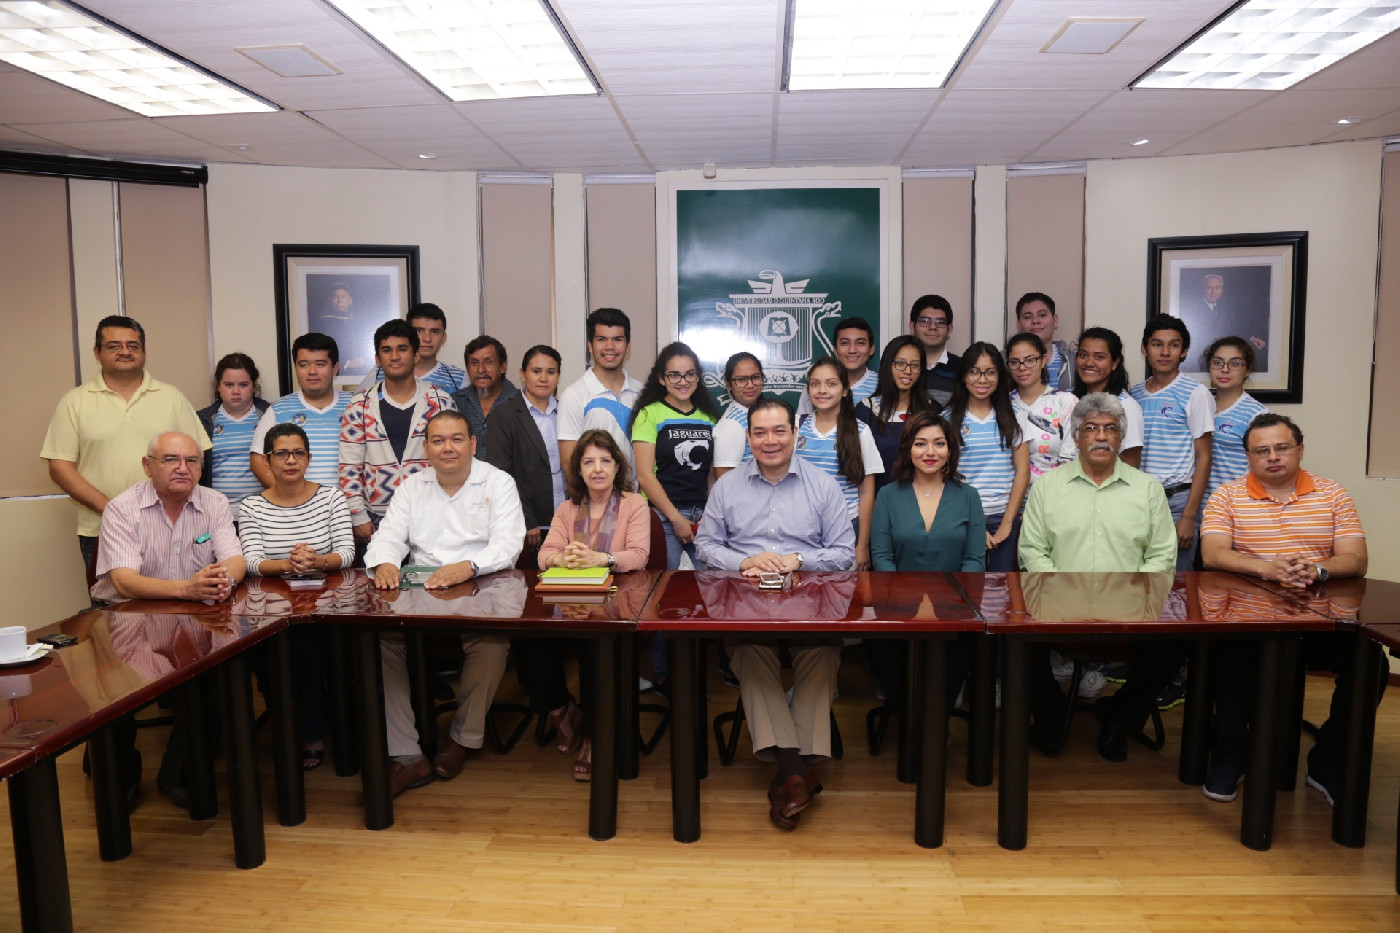 La Universidad de Quintana Roo ofrece educación de calidad y personalizada